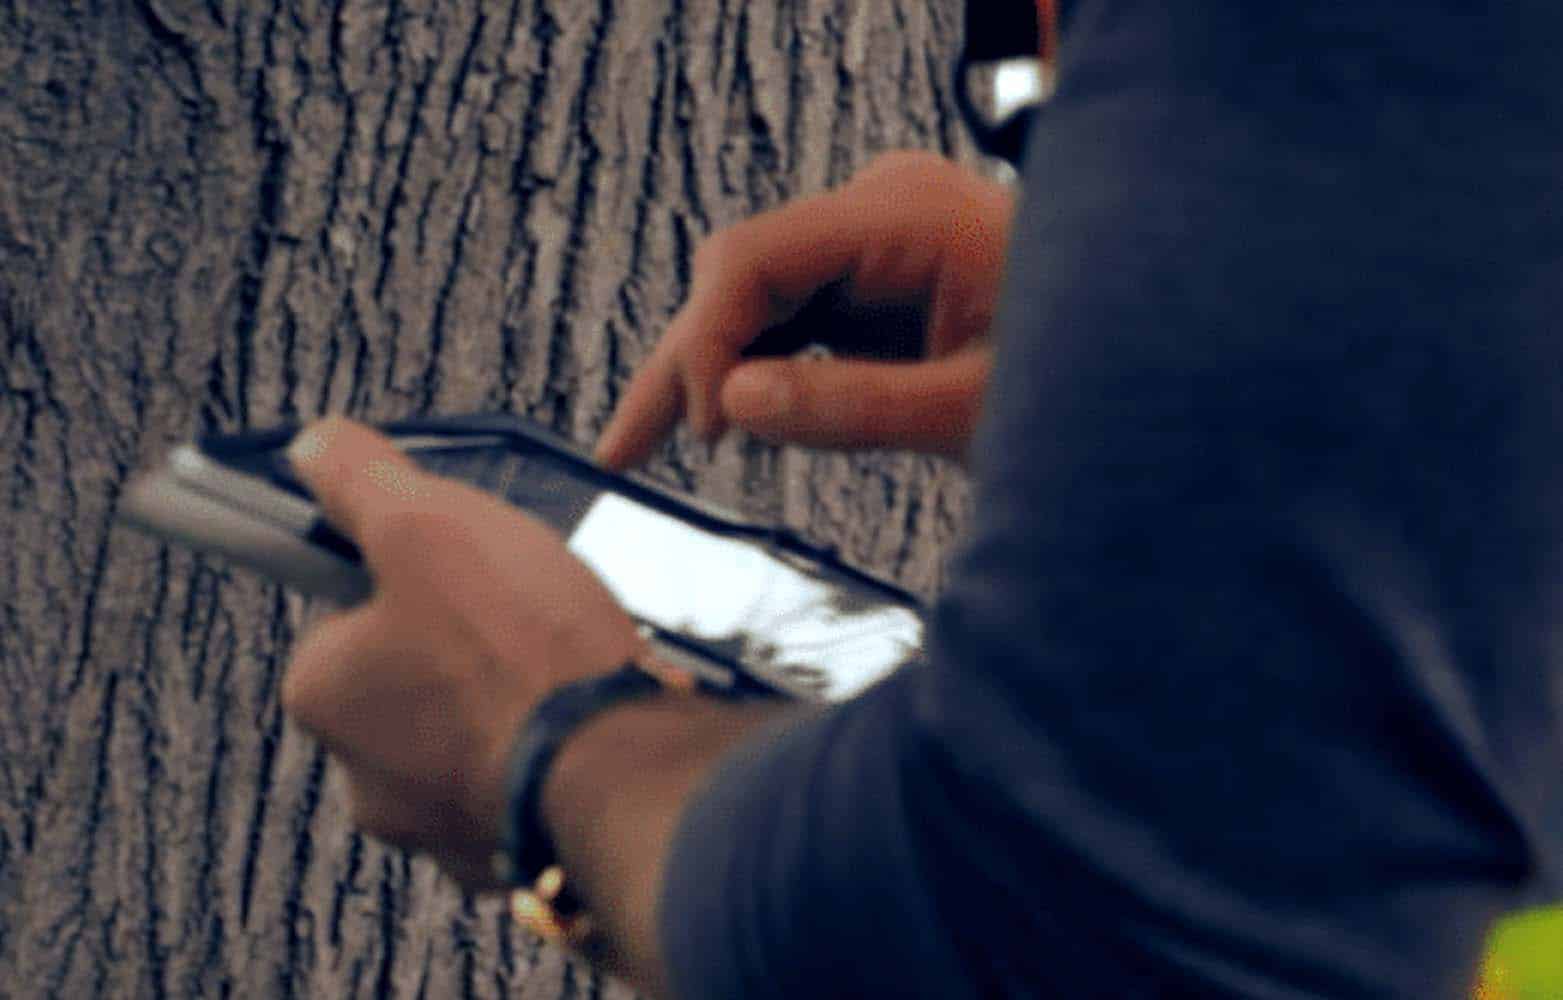 Arborist using TreePlotter software on a tablet